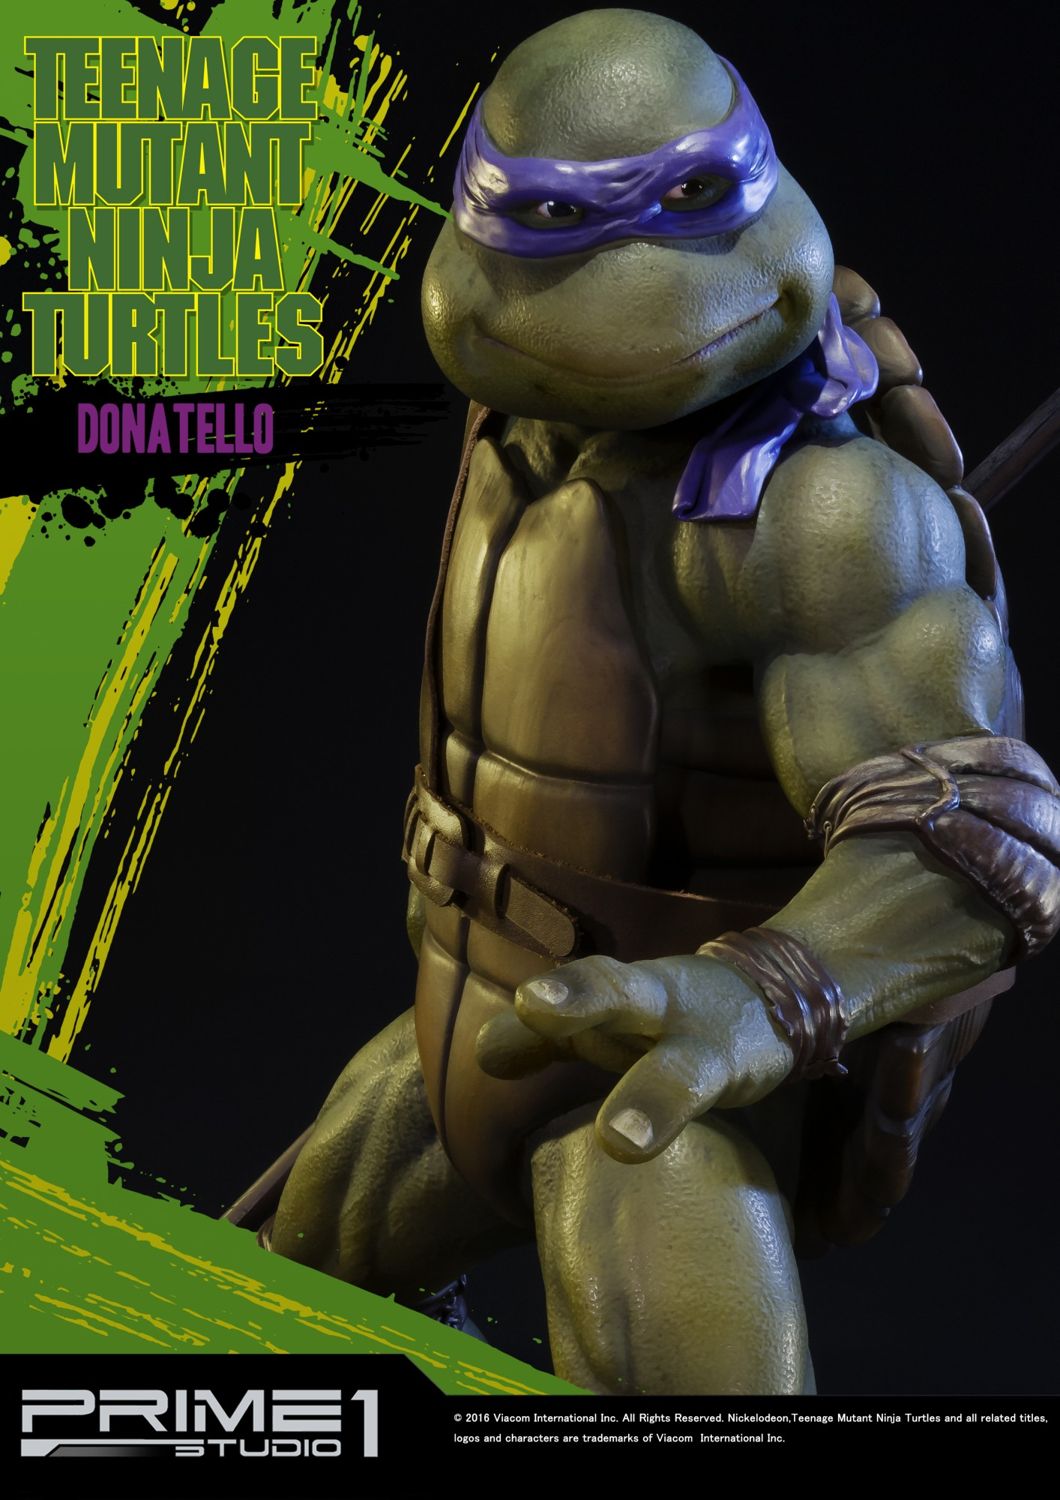 Teenage Mutant Ninja Turtles (1990 Movie) Donatello 1/4 Scale